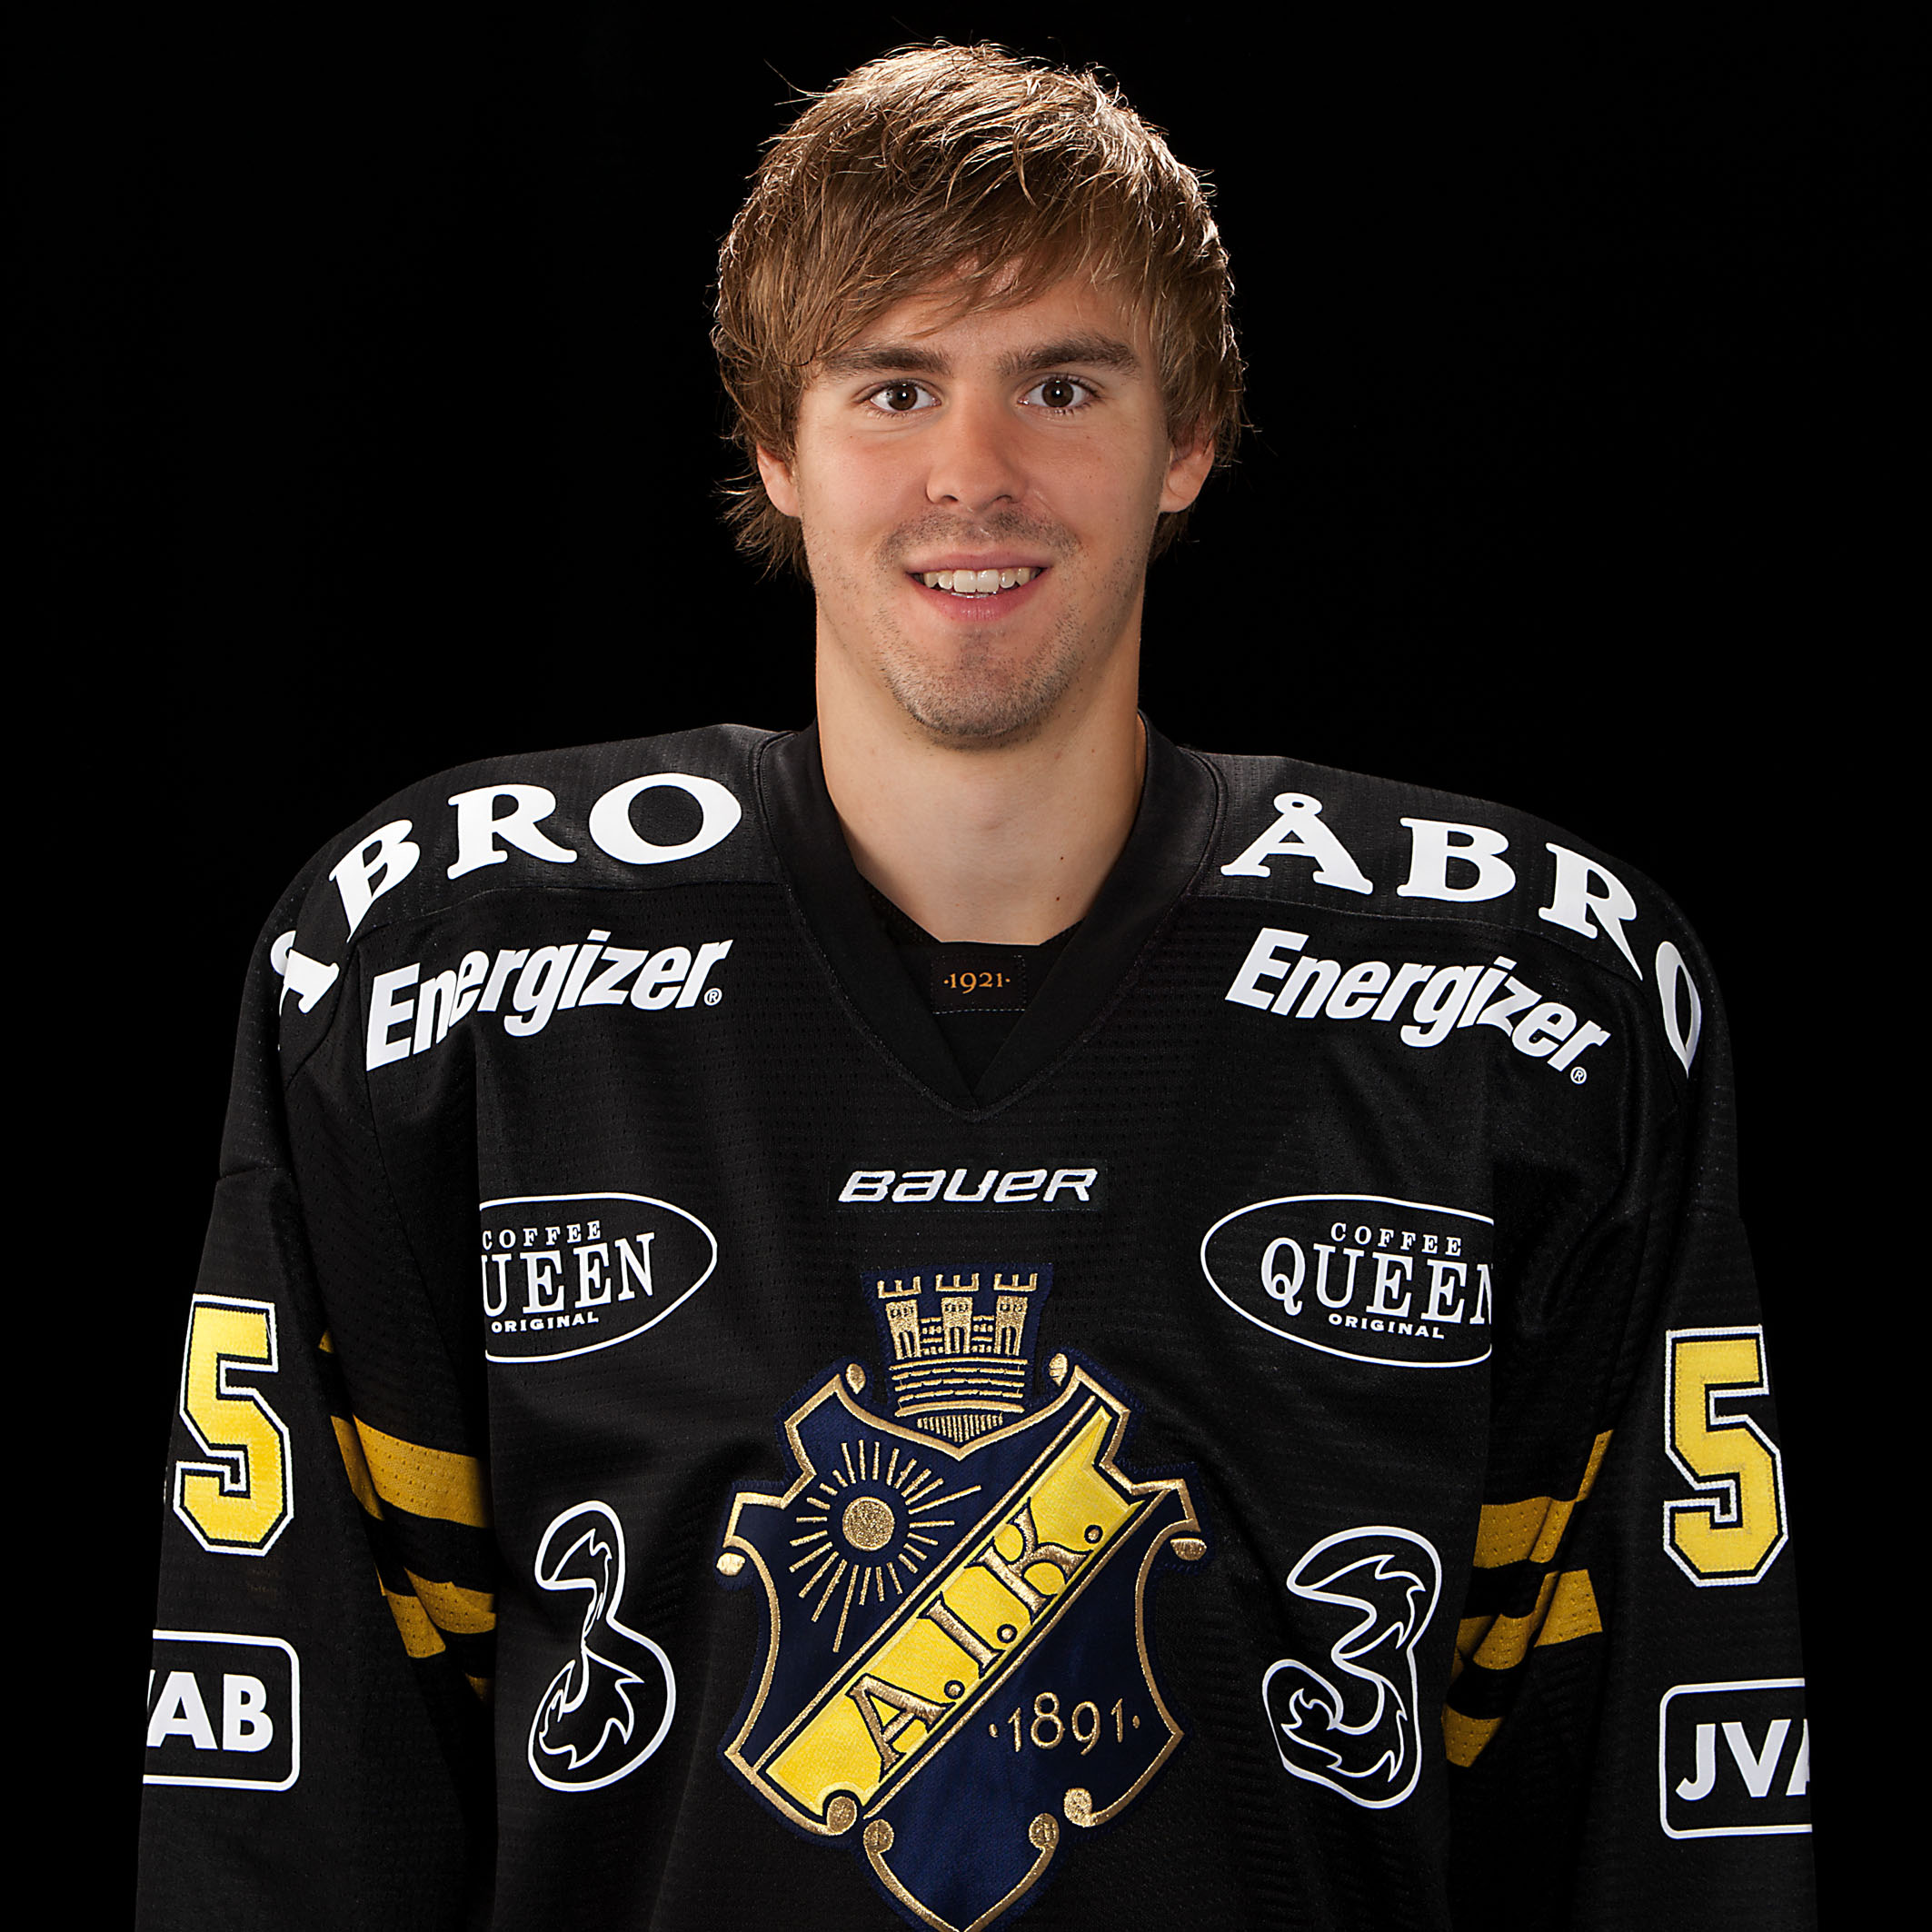 Av många experter kallas han "AIK:s bäste spelare".